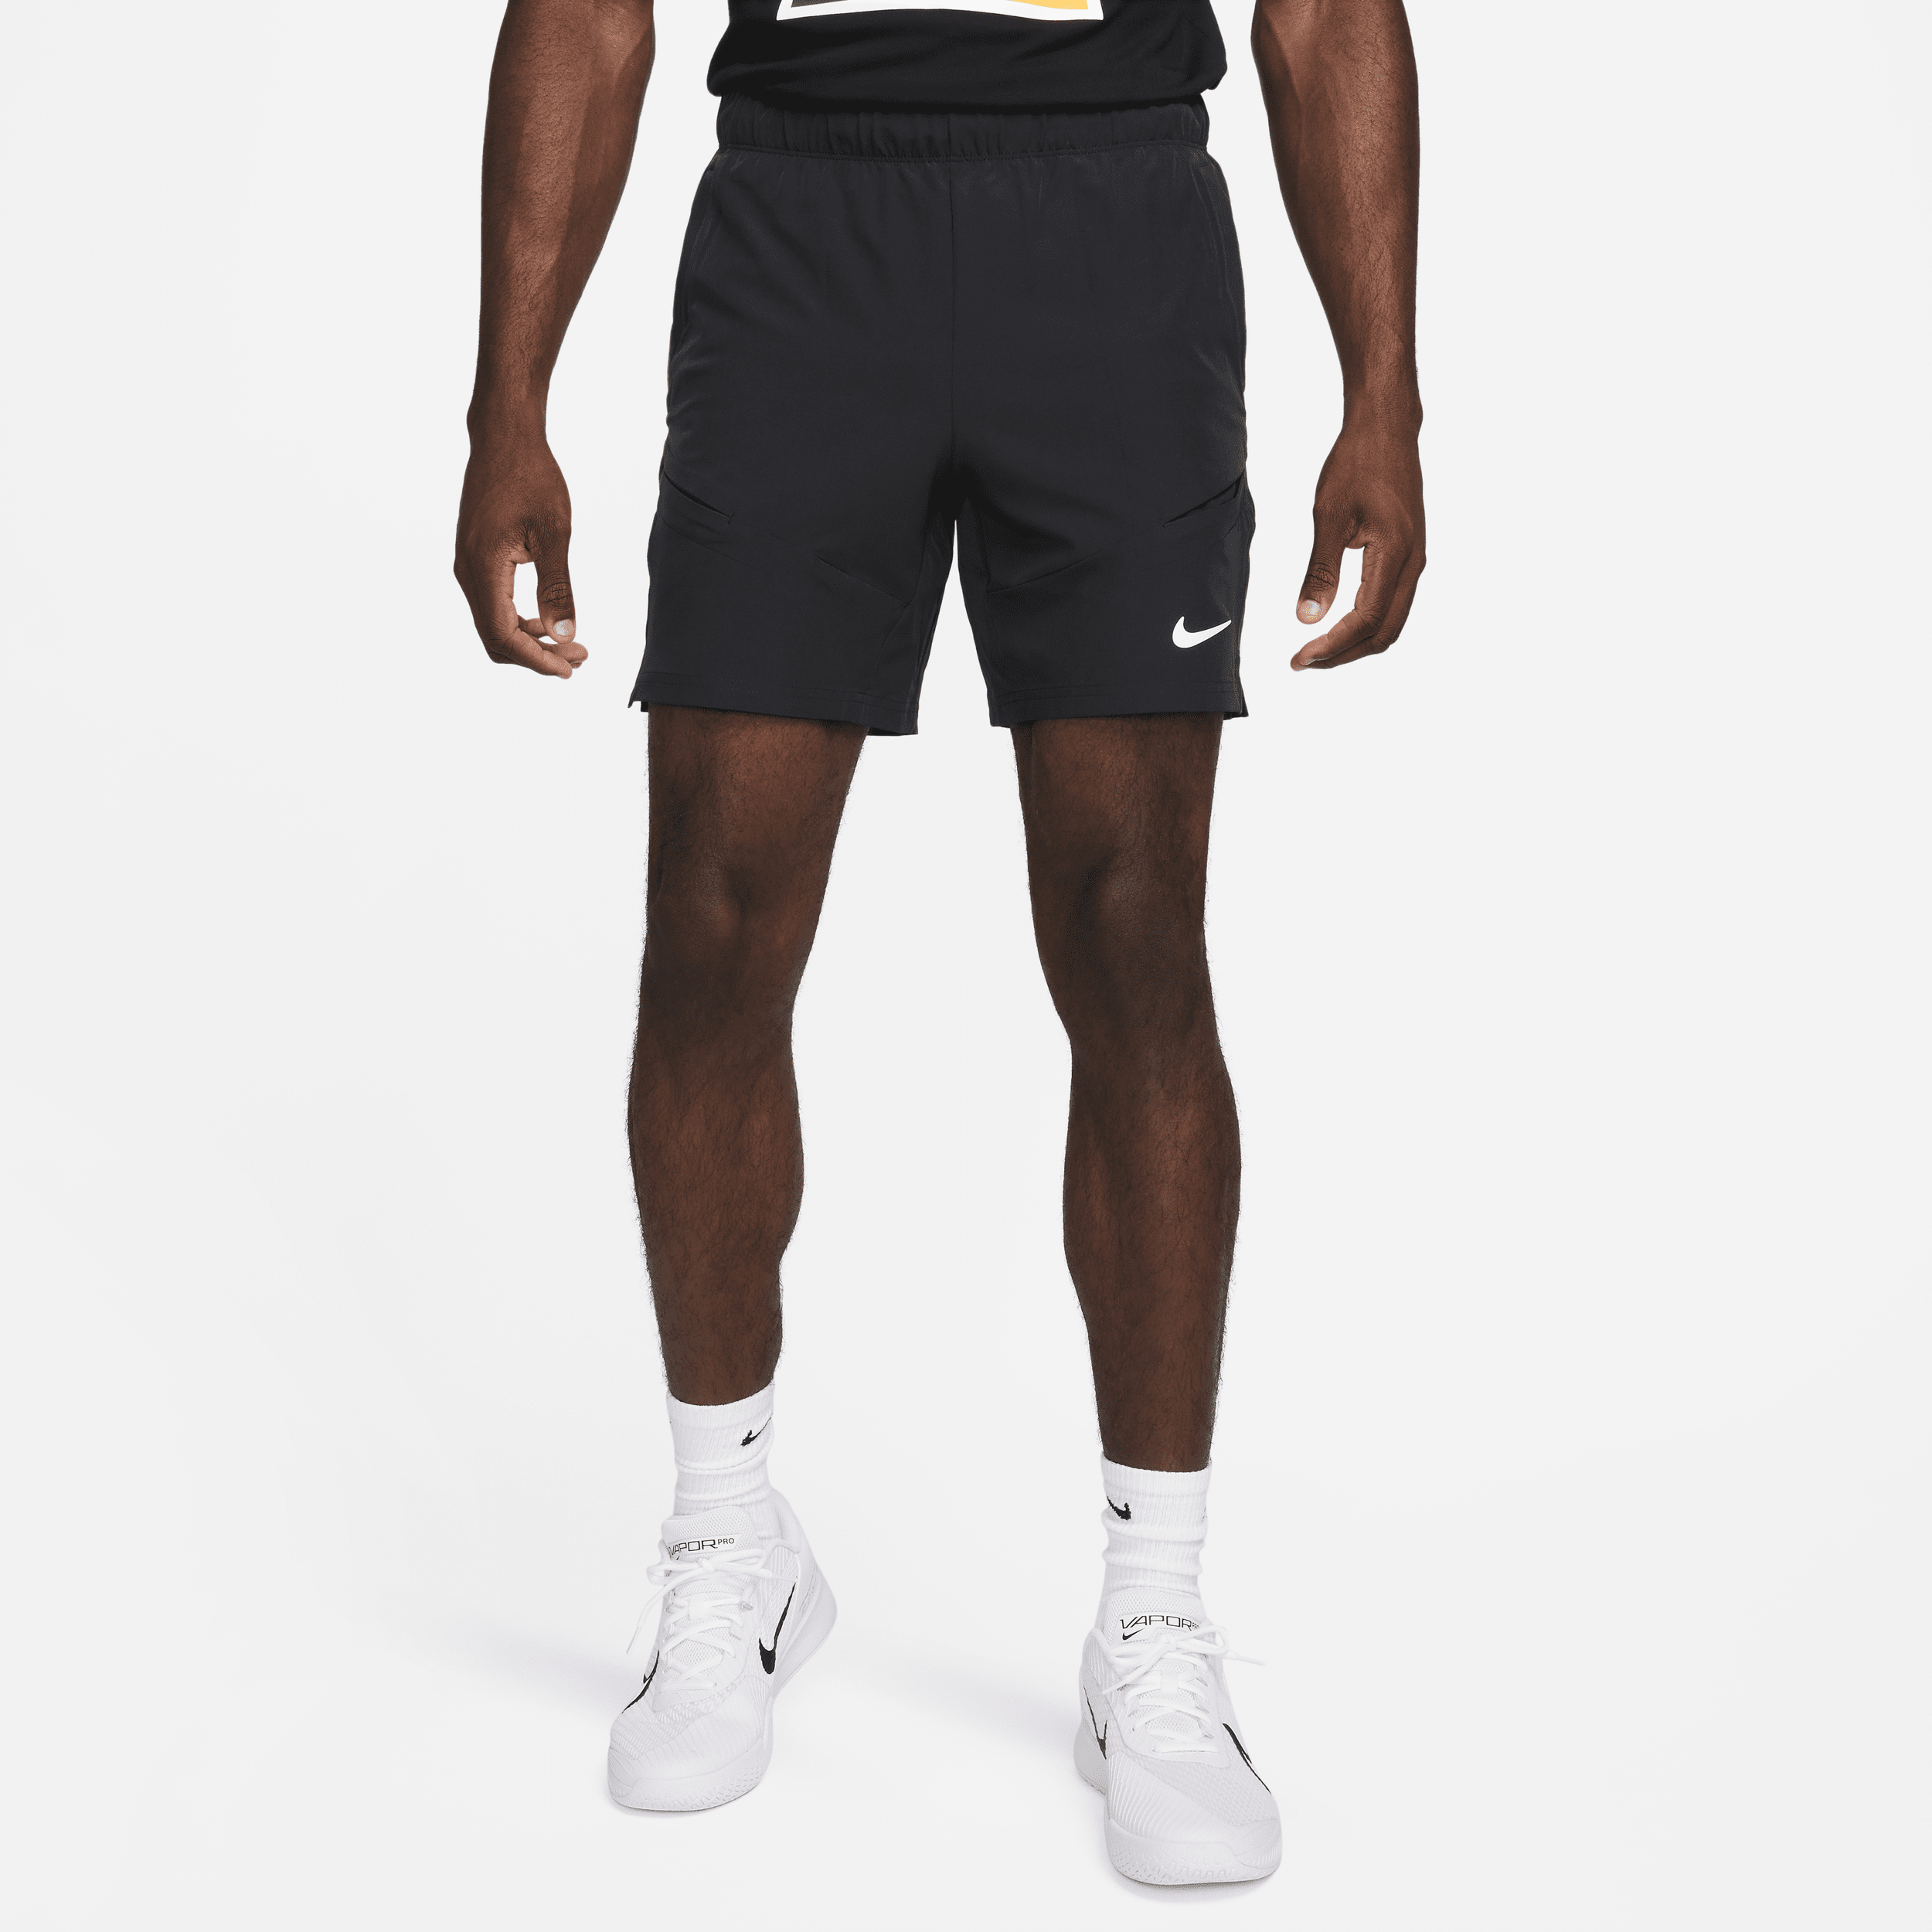 NikeCourt Advantage Dri-FIT-tennisshorts (18 cm) til mænd - sort